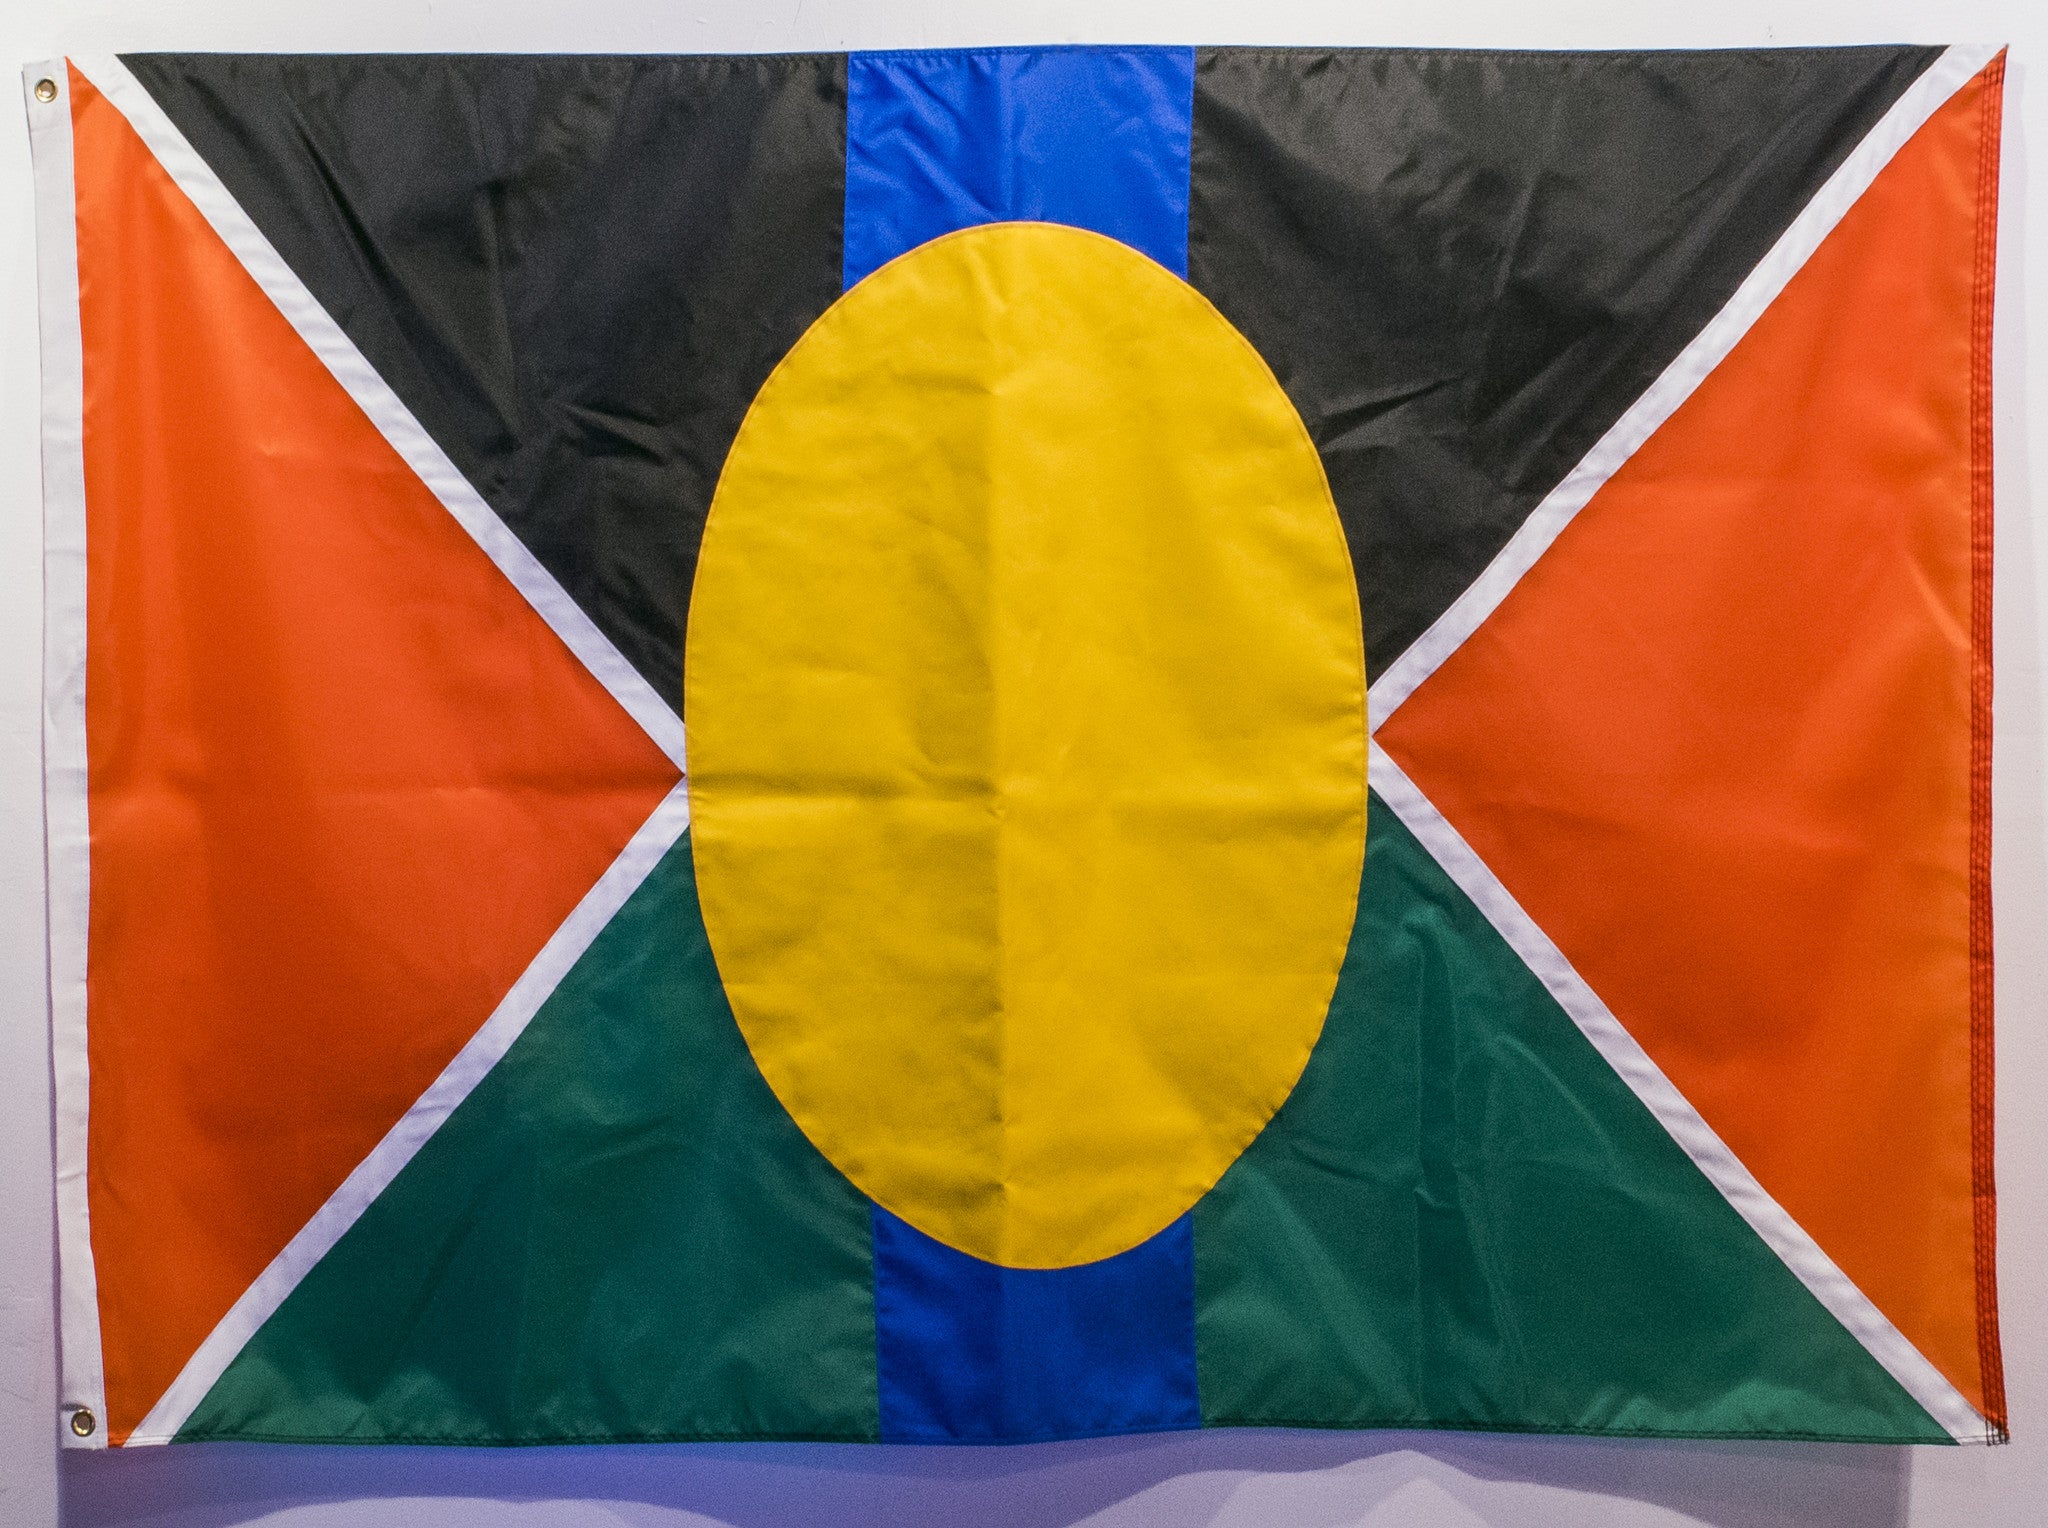 Azikiwe Mohammed, "New Davonhaime Flag #1"